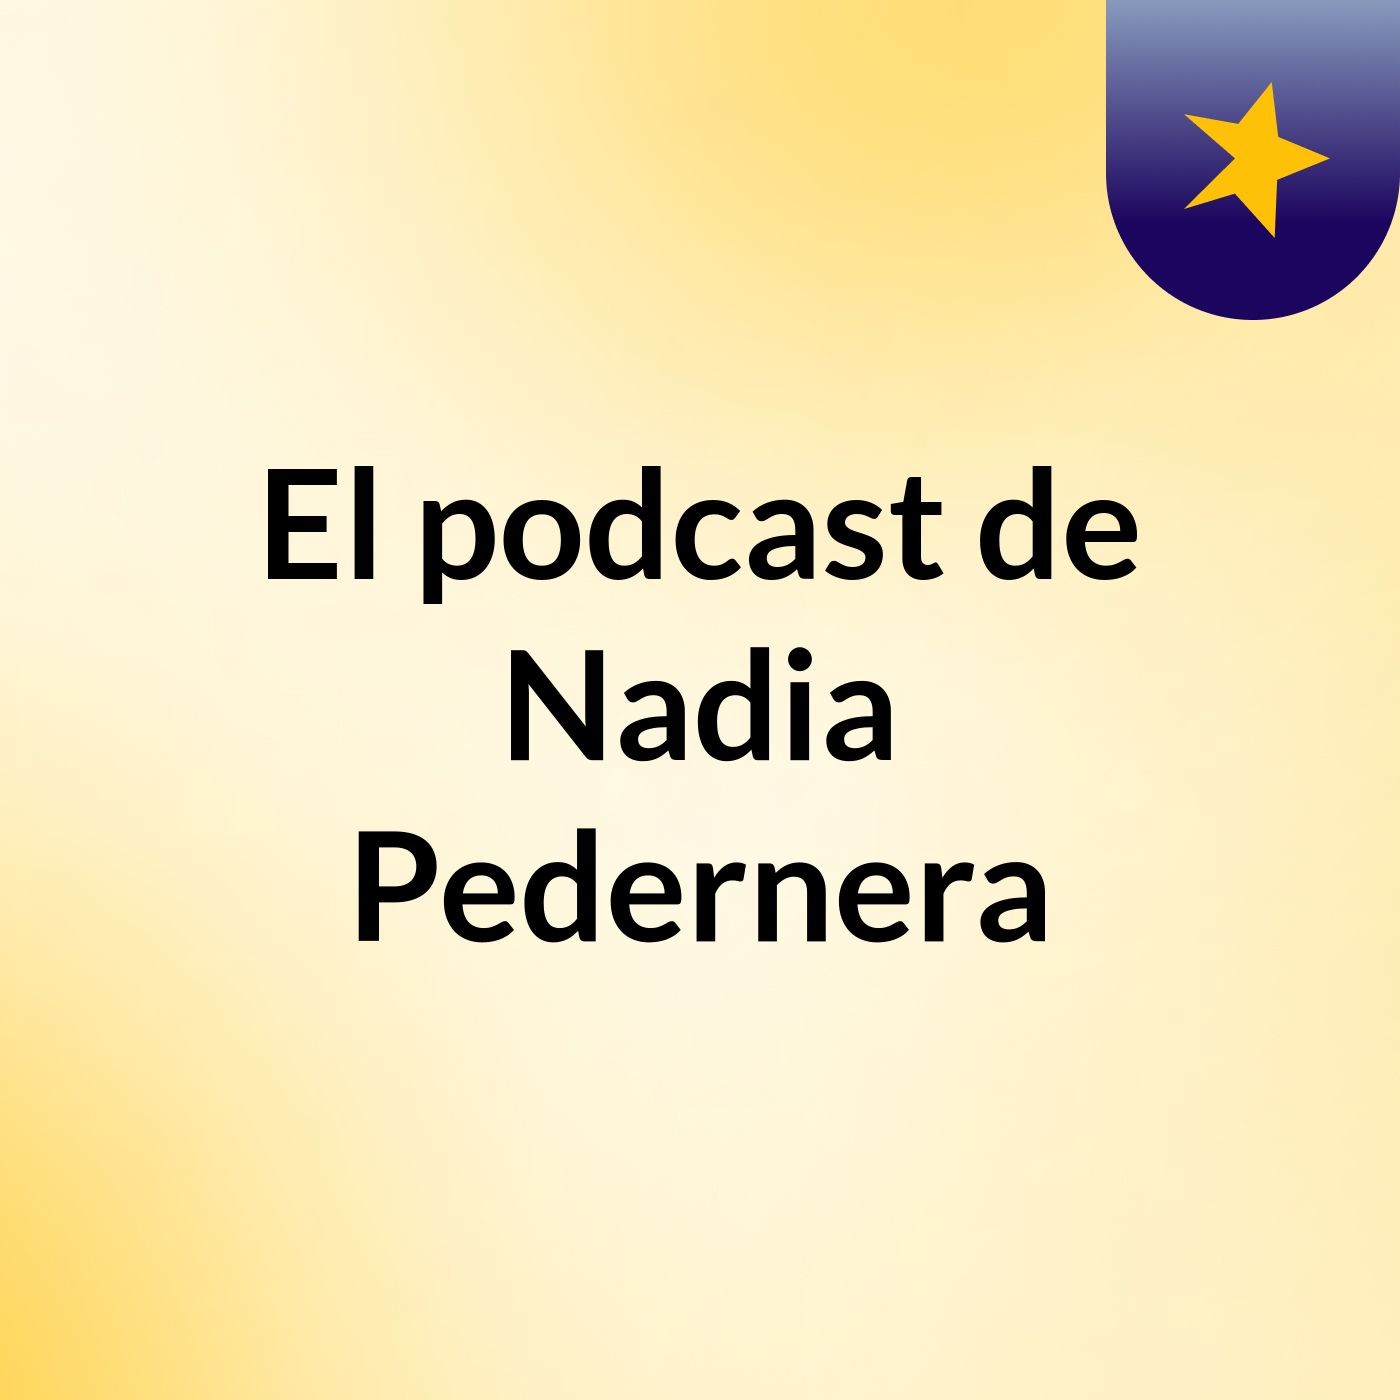 Episodio 22 - El podcast de Nadia Pedernera